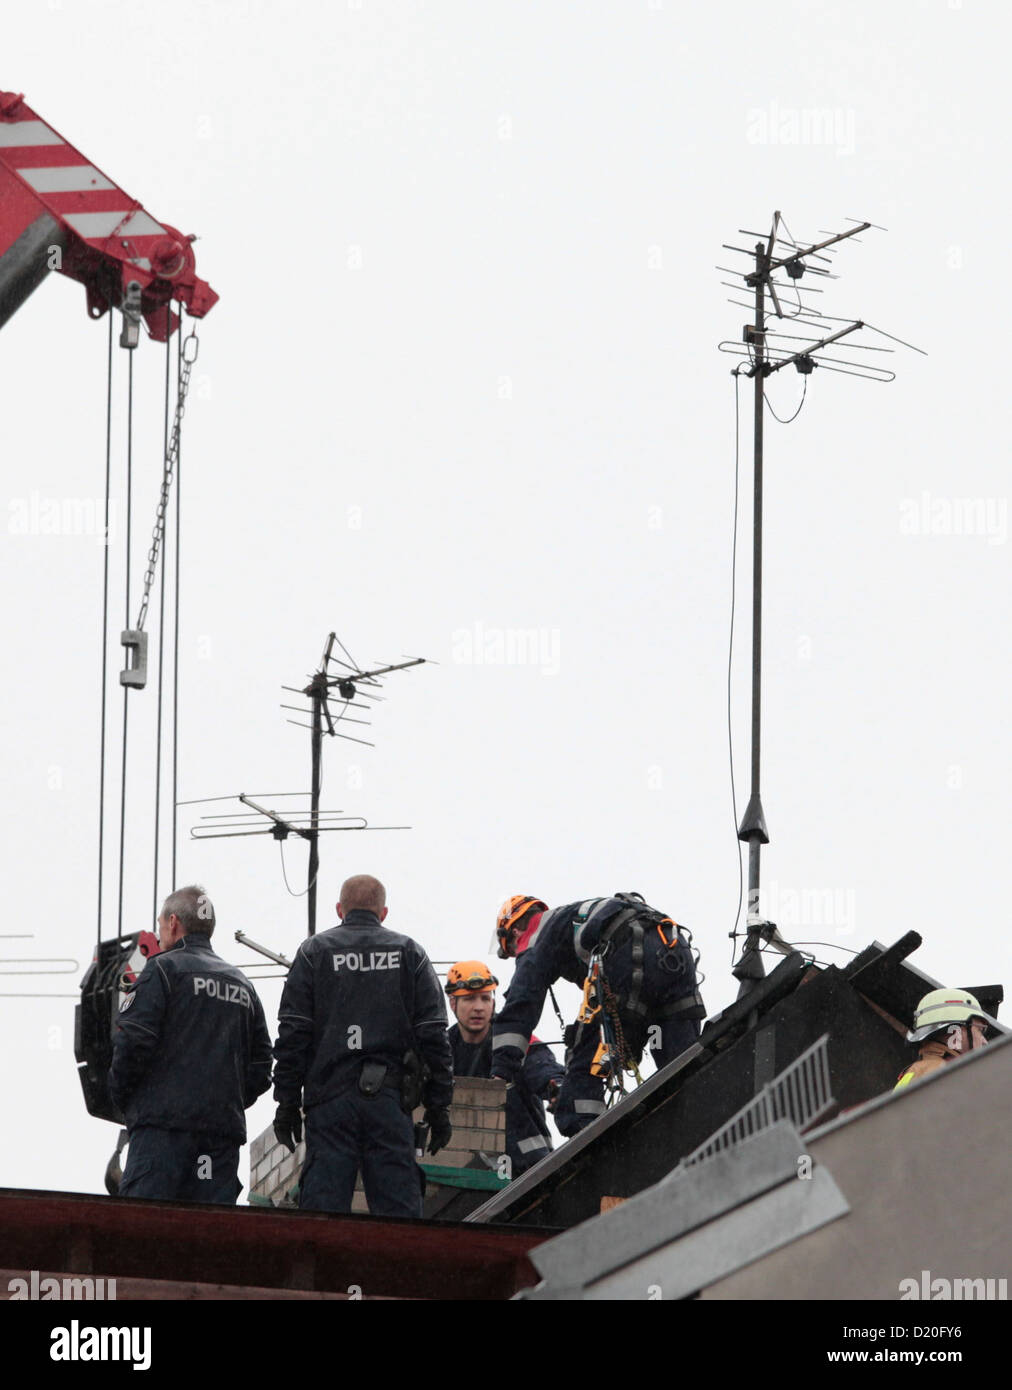 Rettungskräfte versuchen, einen Mann zu erholen, in einen Schornstein in Berlin, Deutschland, 9. Januar 2013 fielen. Nachdem der Mann gerettet werden könnte, er verlor das Bewusstsein und musste wiederbelebt werden. Er verliebte sich zehn Meter tief in den Schornstein. Foto: FLORIAN SCHUH Stockfoto